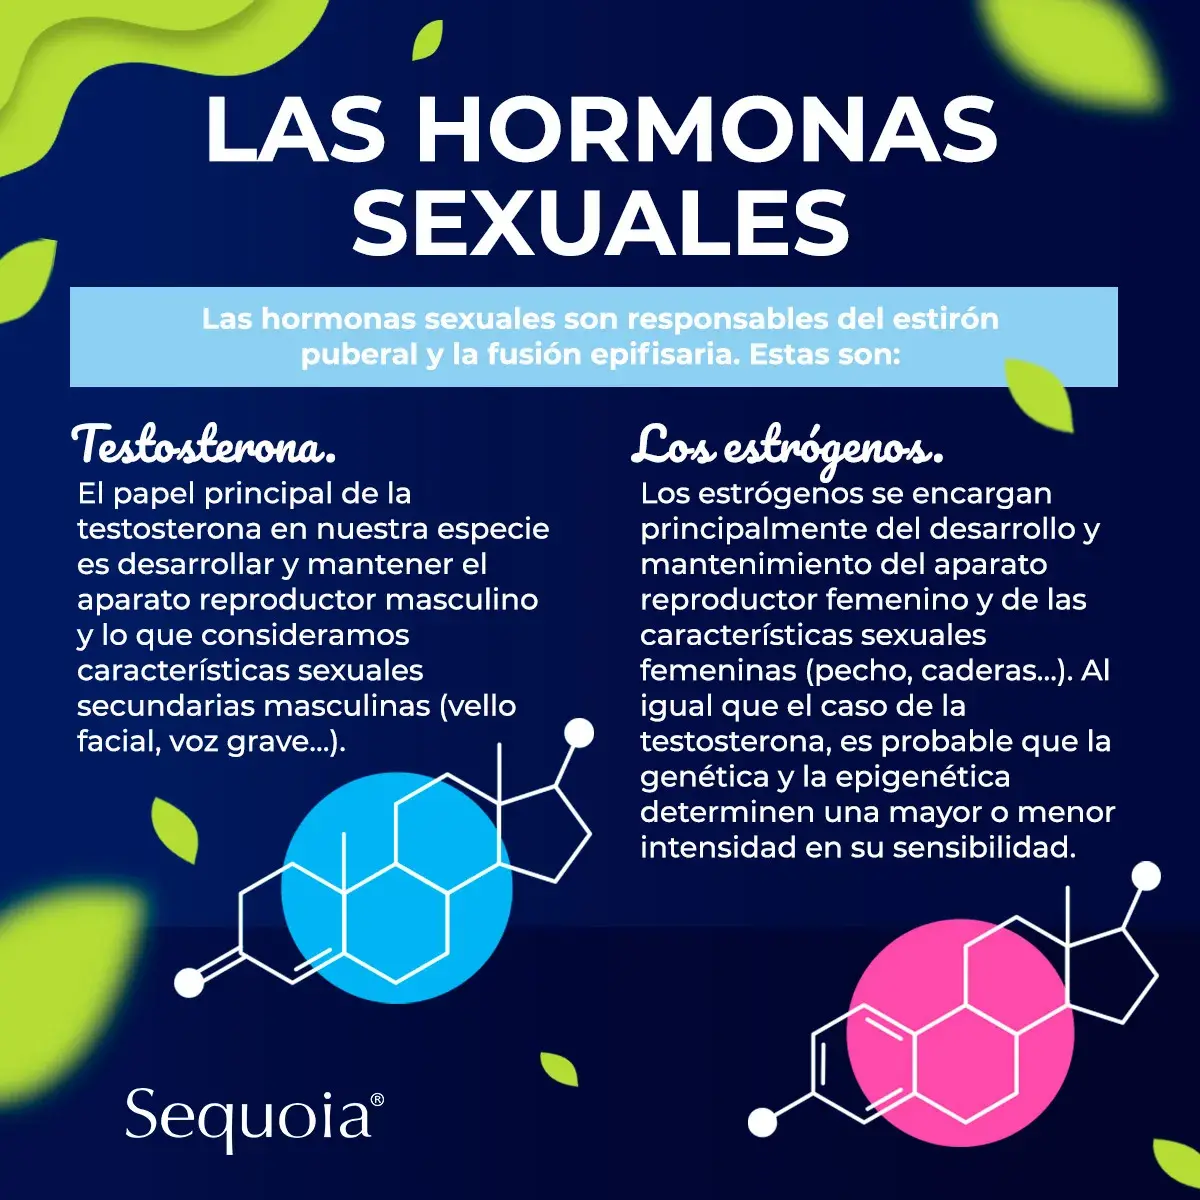 Las hormonas sexuales (testosterona y estrógenos)